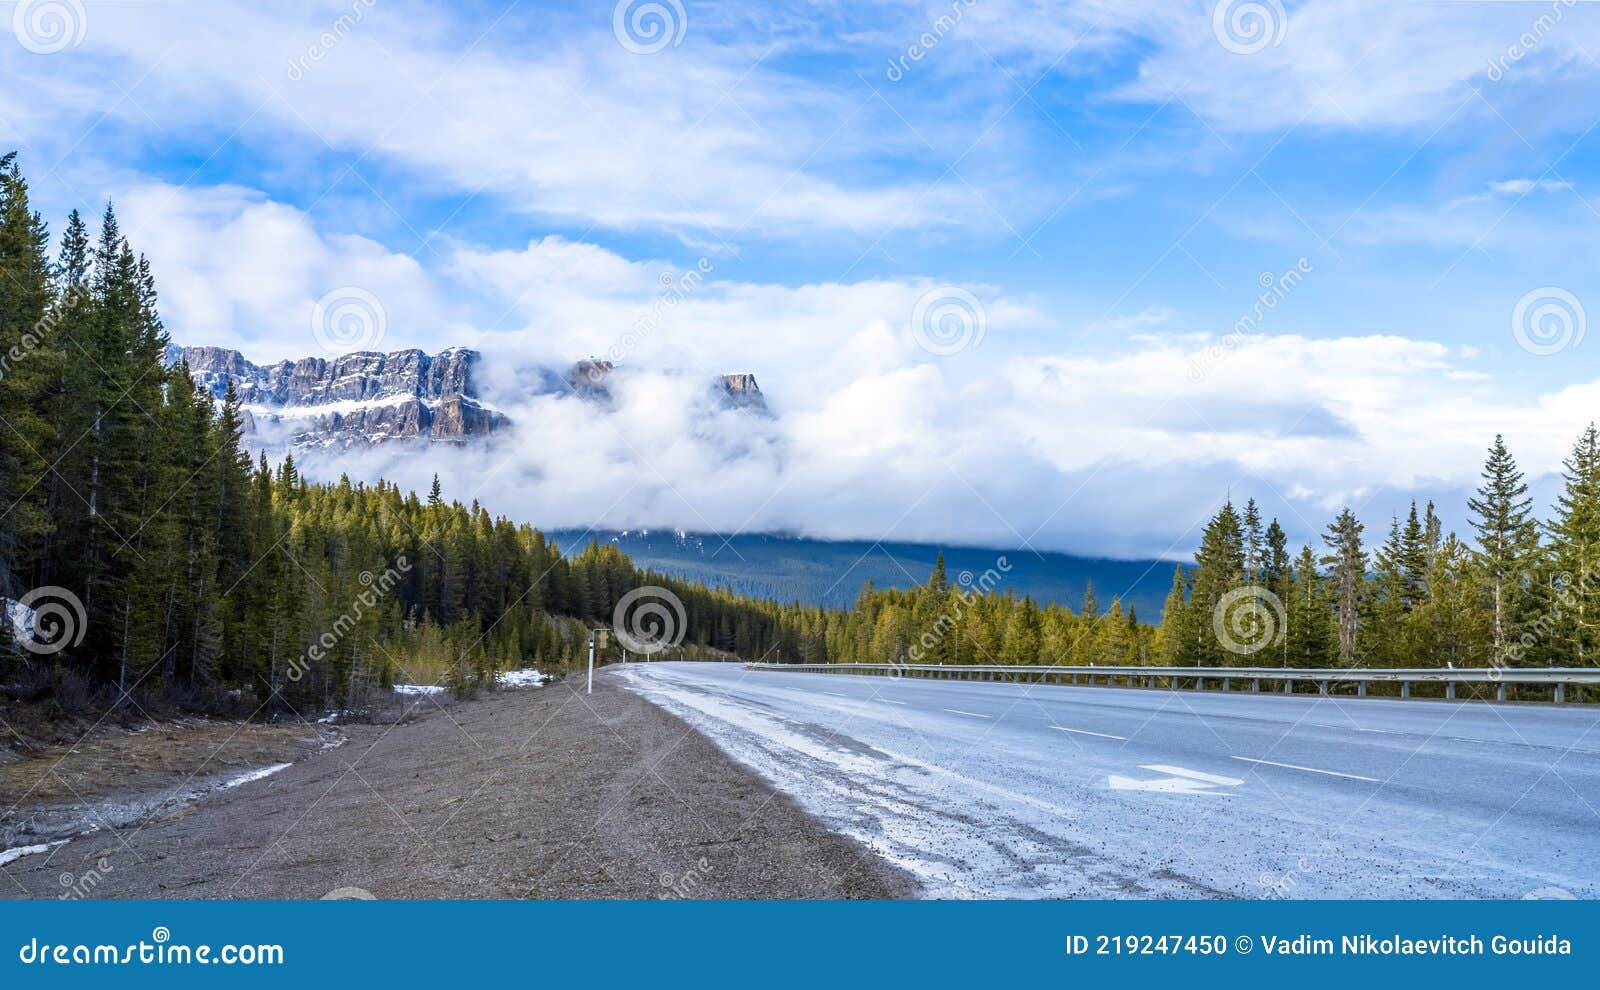 castle mountain blackfoot: miistukskoowa  mountain